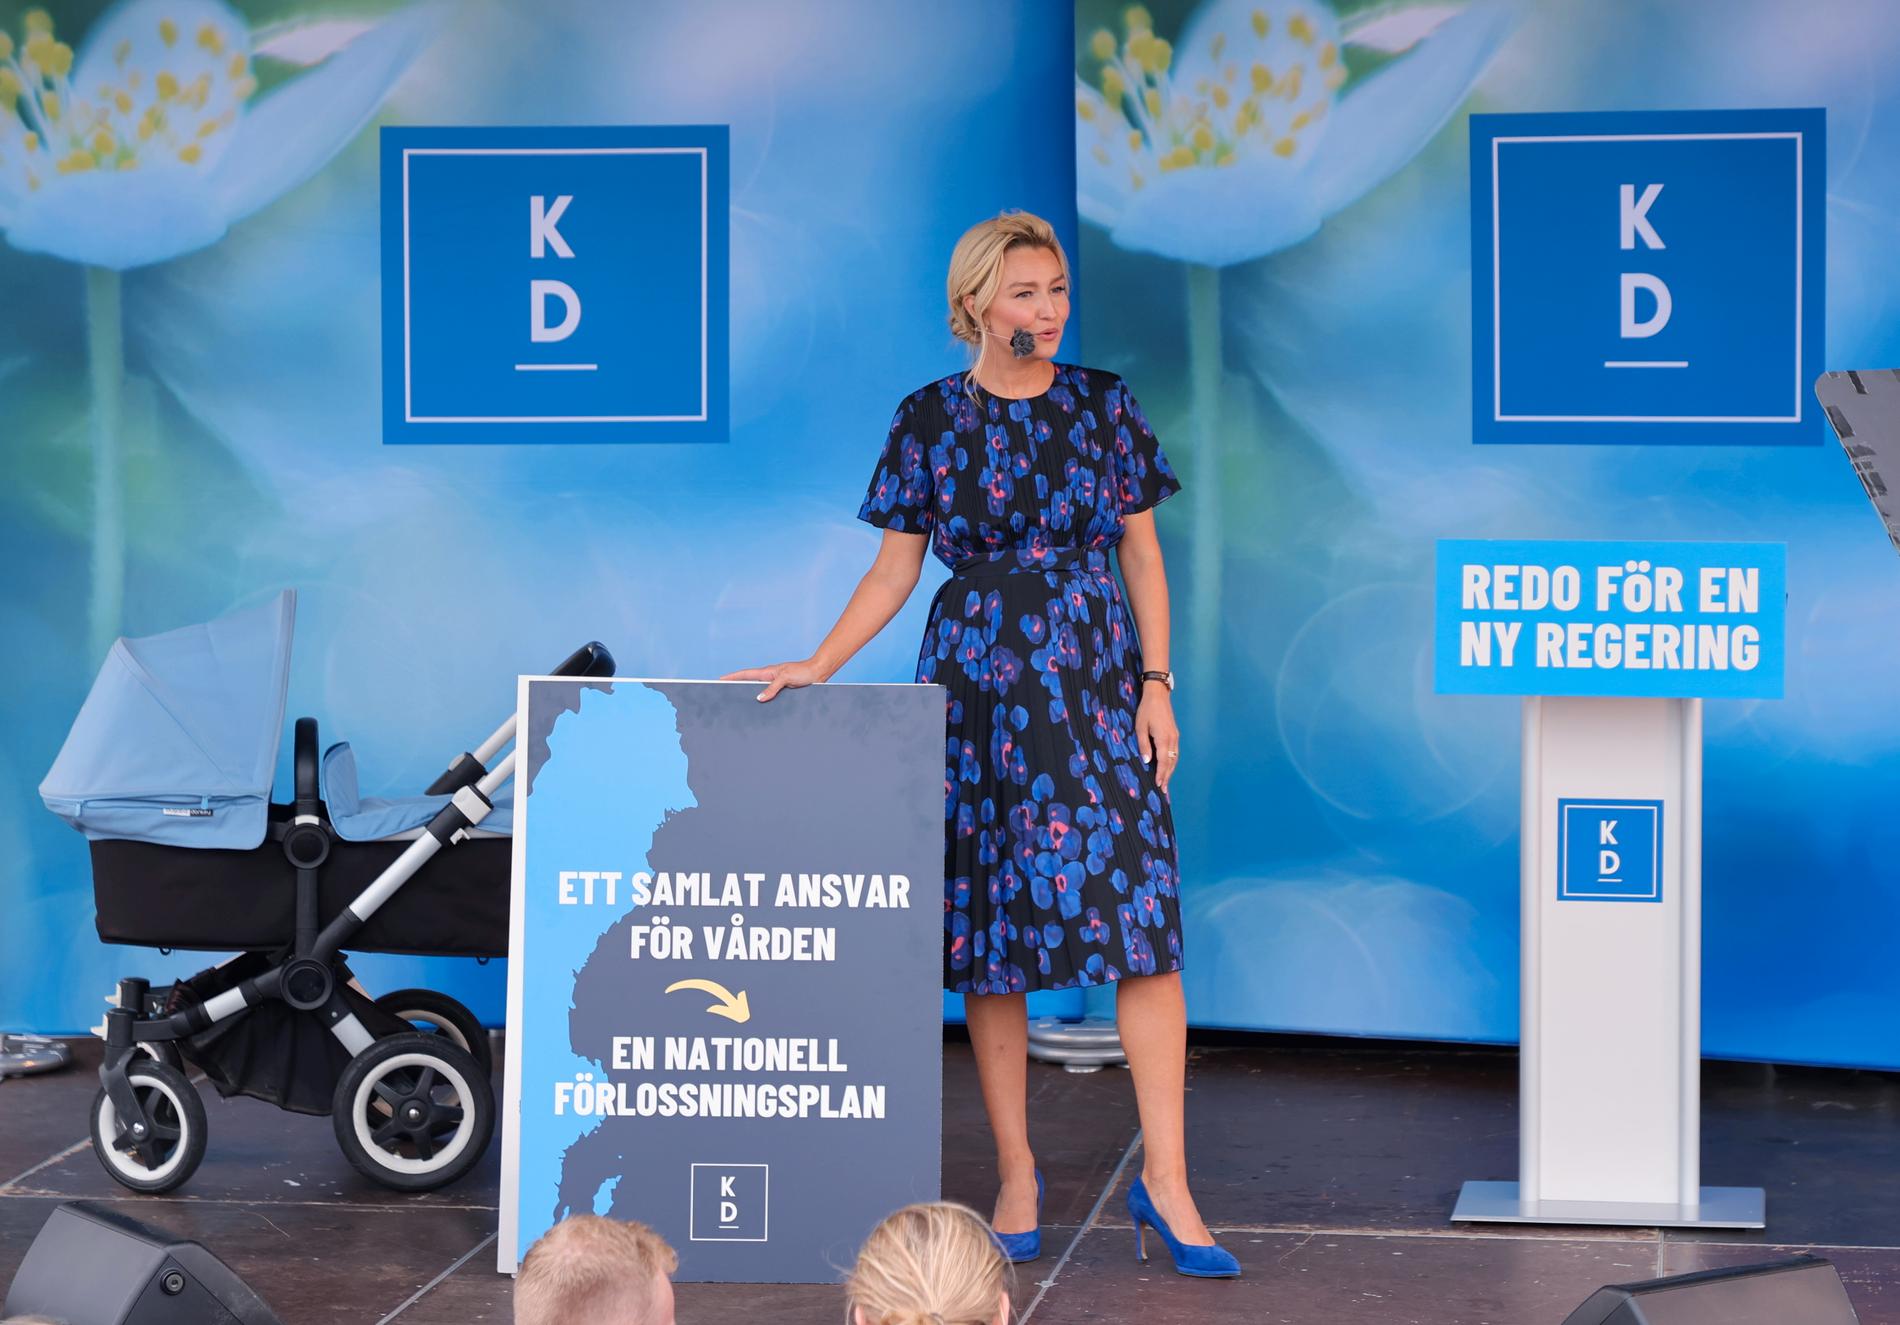 Vissa förlossningskliniker som lagts ned bör återöppnas, anser KD. Partiledare Ebba Busch nämner Kiruna, Sollefteå, Mora och Karlskoga.